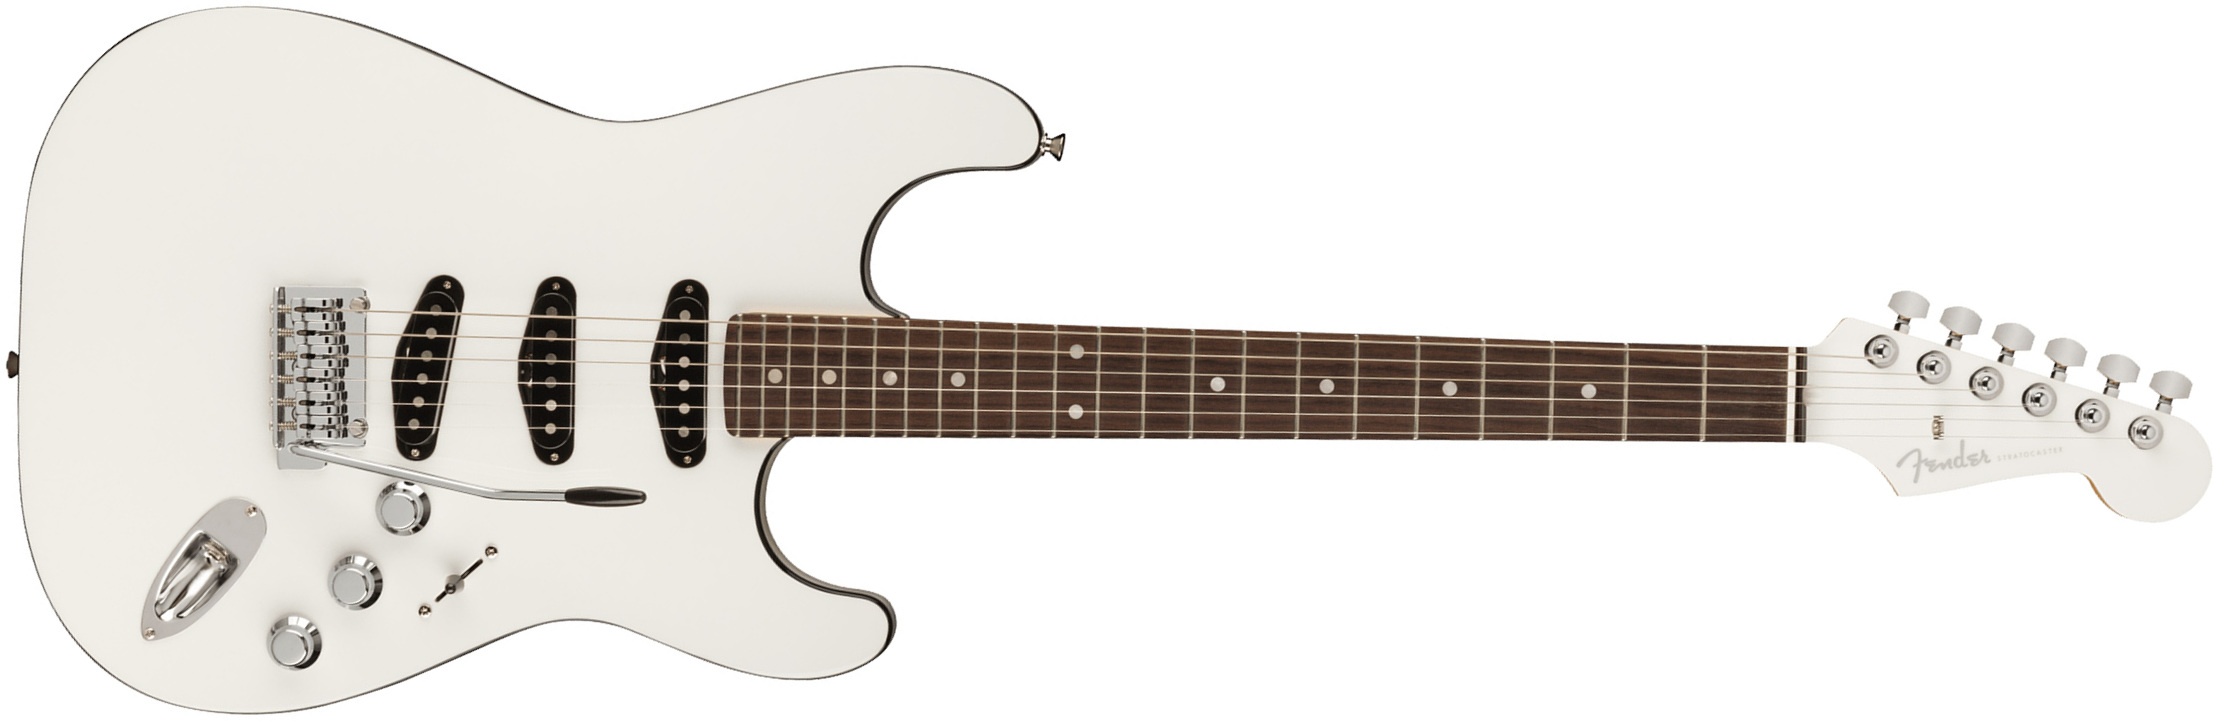 Fender Strat Aerodyne Special Jap 3s Trem Rw - Bright White - Elektrische gitaar in Str-vorm - Main picture